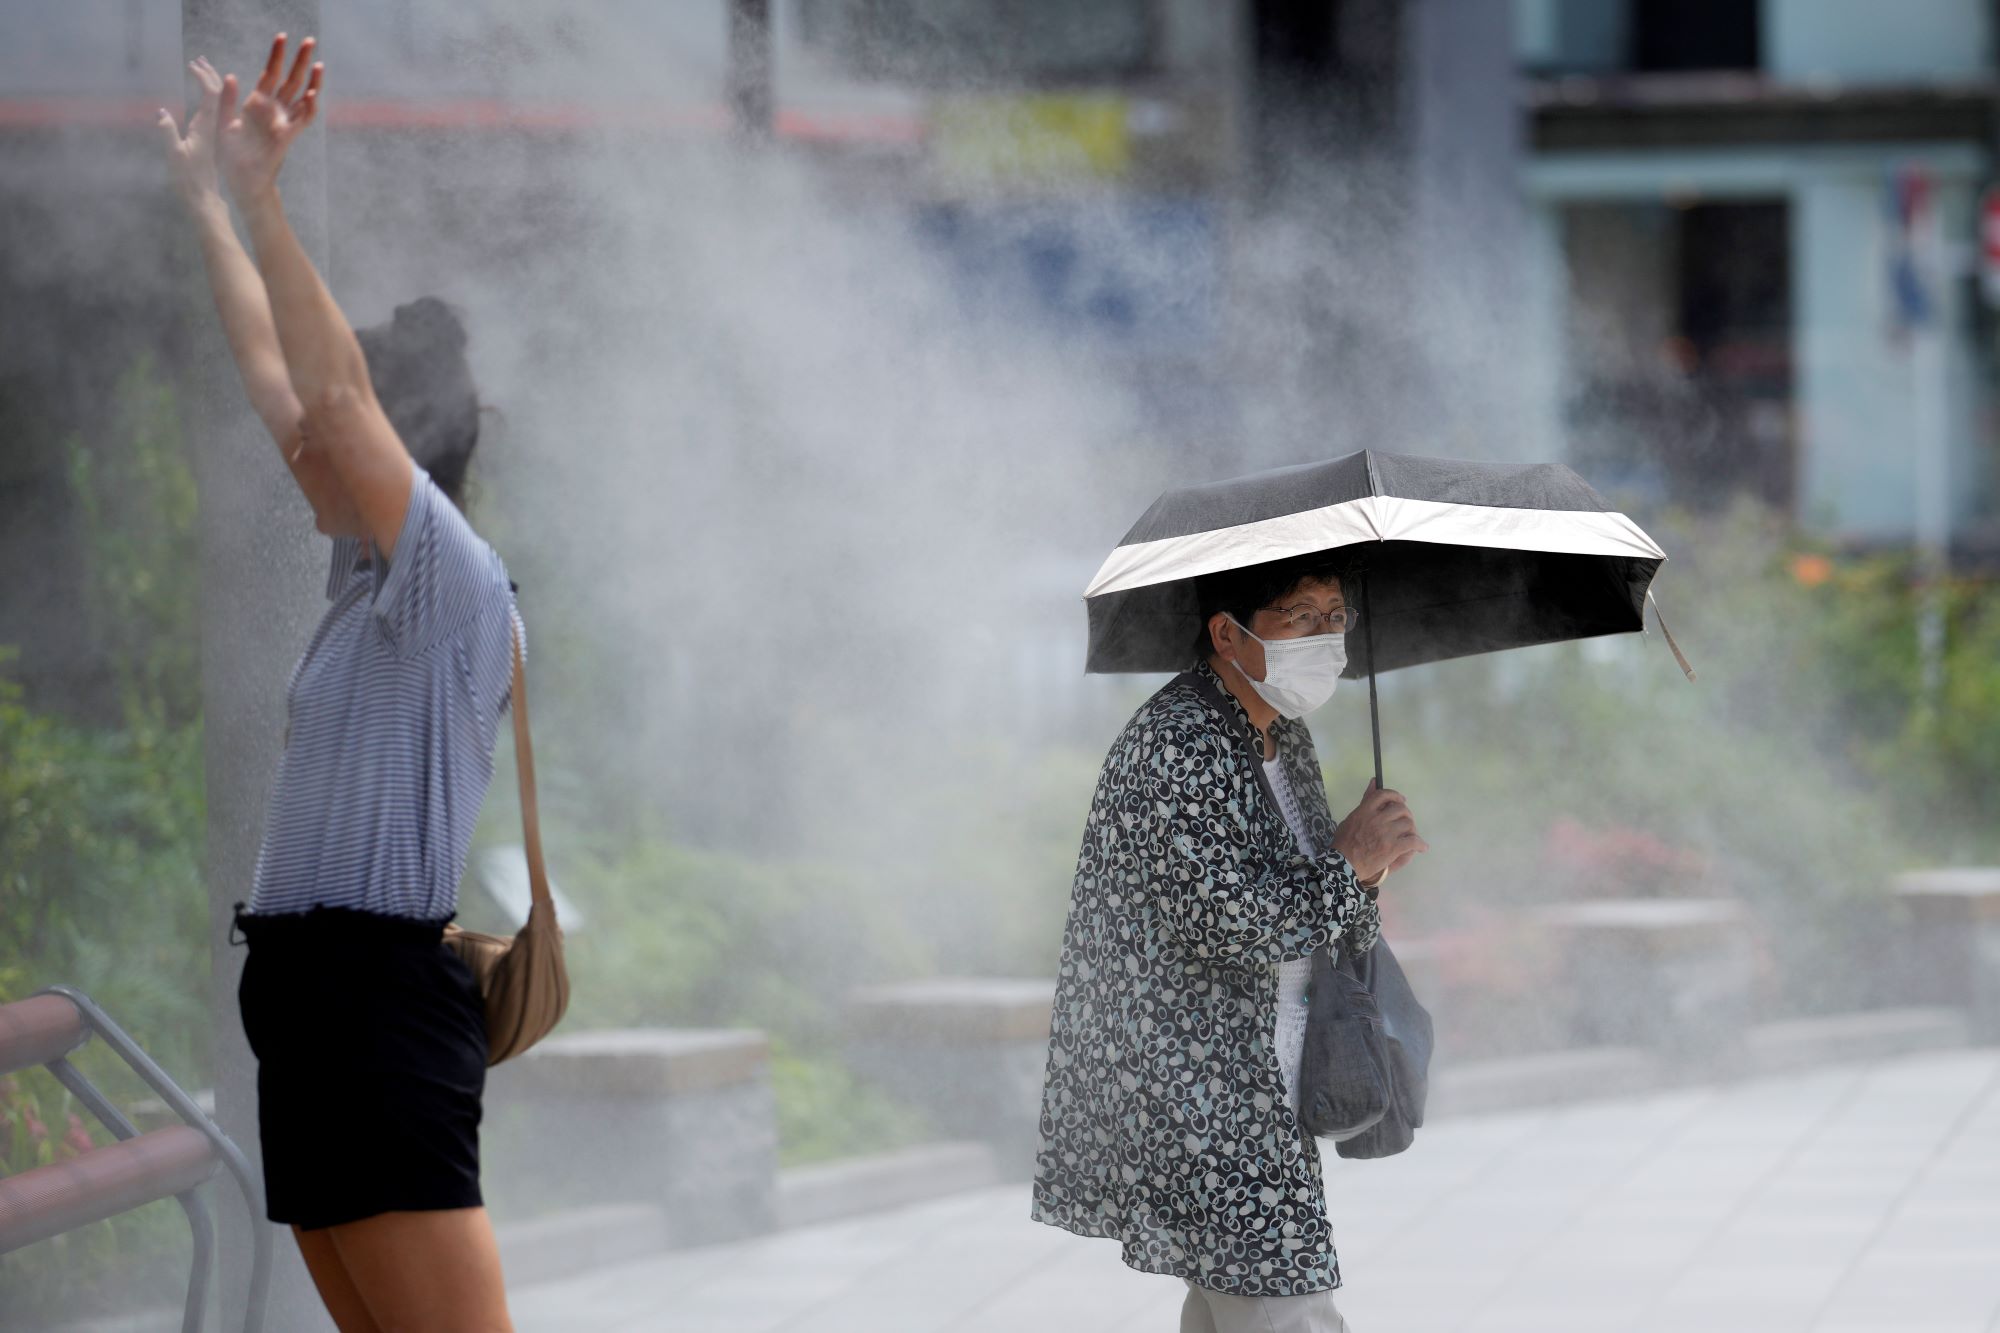 Ιαπωνία: «Παρακαλούμε μείνετε ενυδατωμένοι» –  Προειδοποίηση για κίνδυνο θερμοπληξίας λόγω ρεκόρ υψηλών θερμοκρασιών